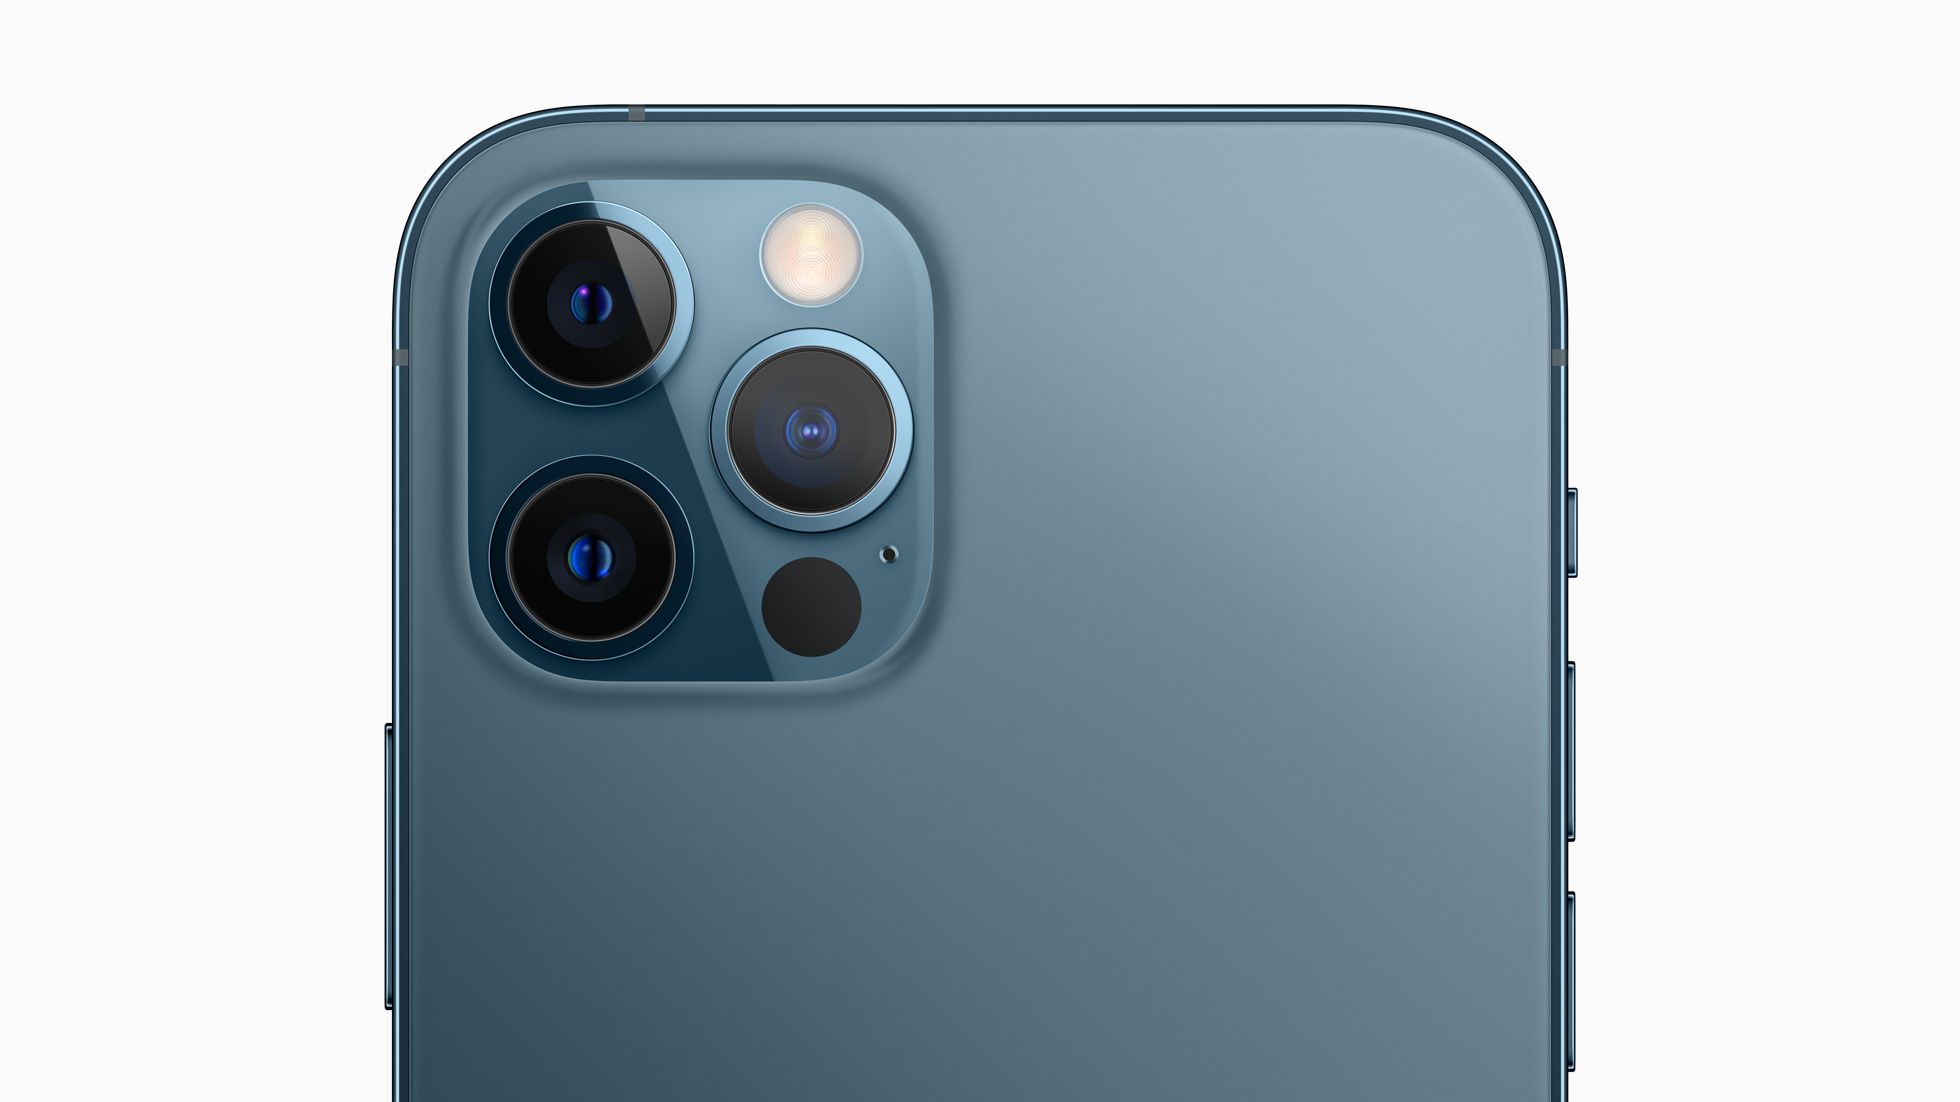 Kamera pada iPhone 12 Pro